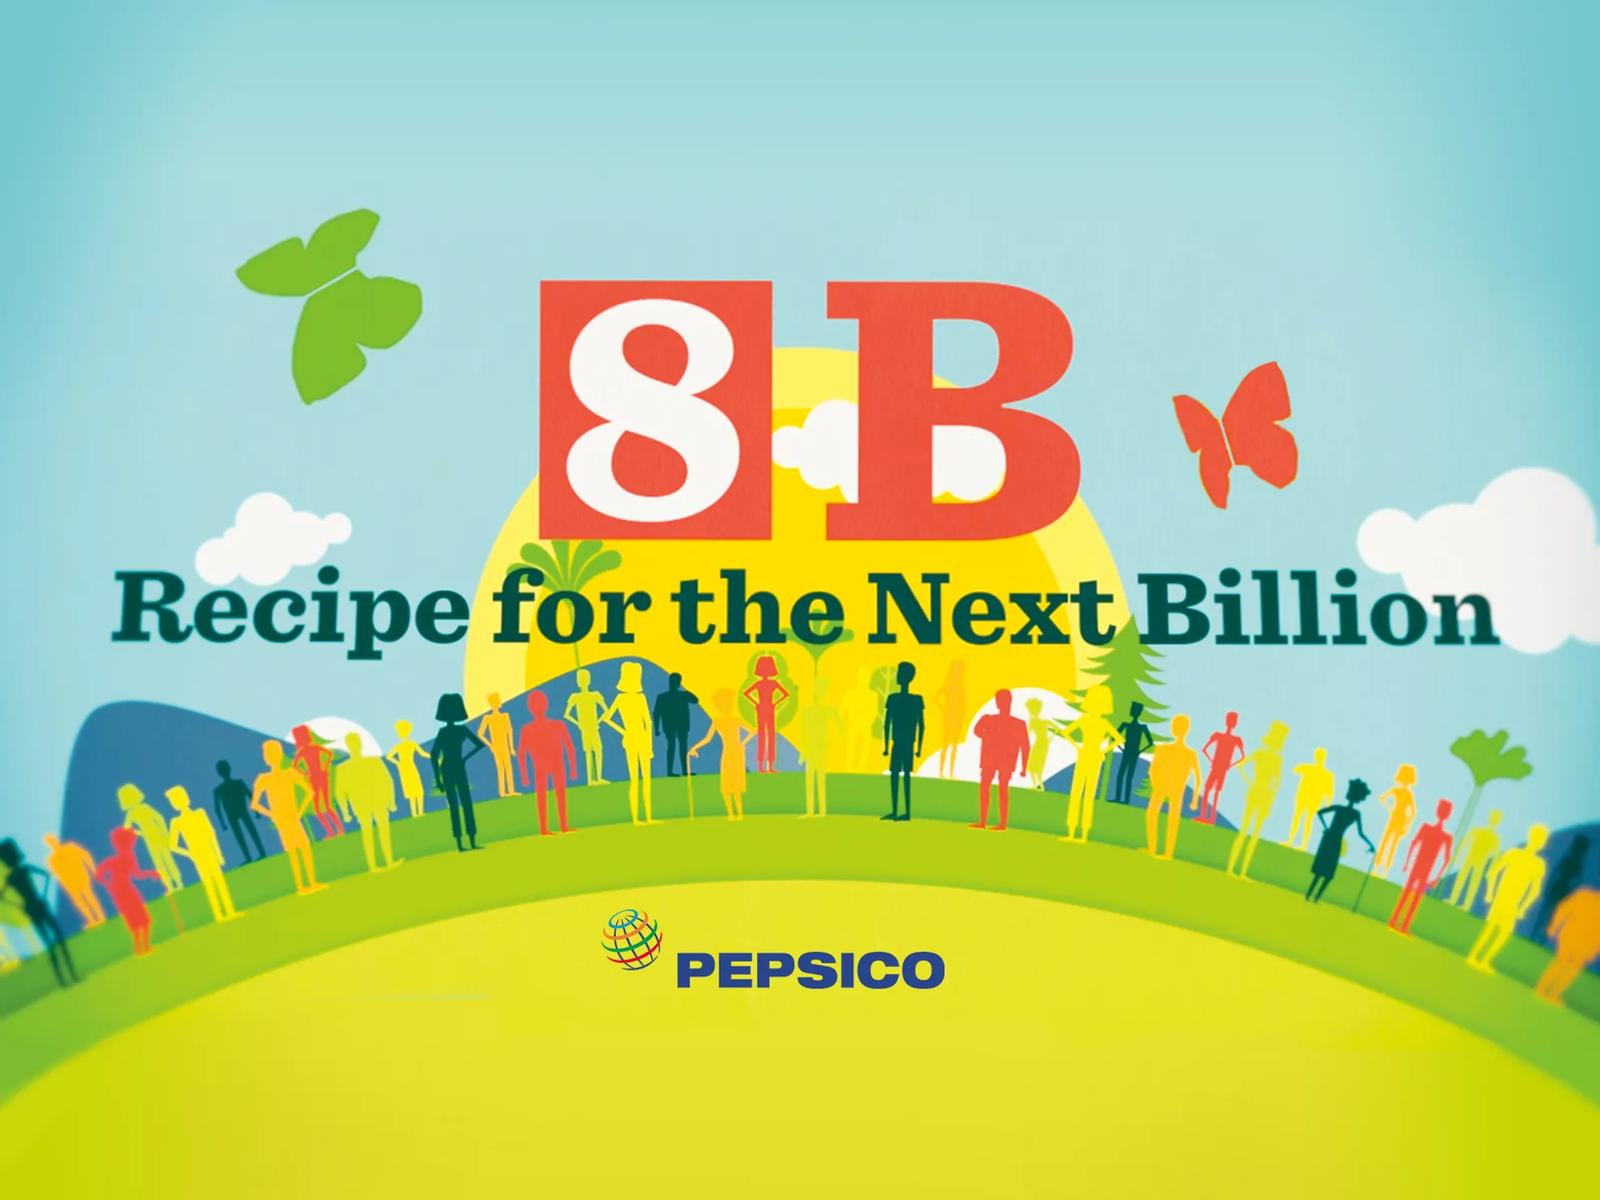 PepsiCo’s Recipe for the Next Billion